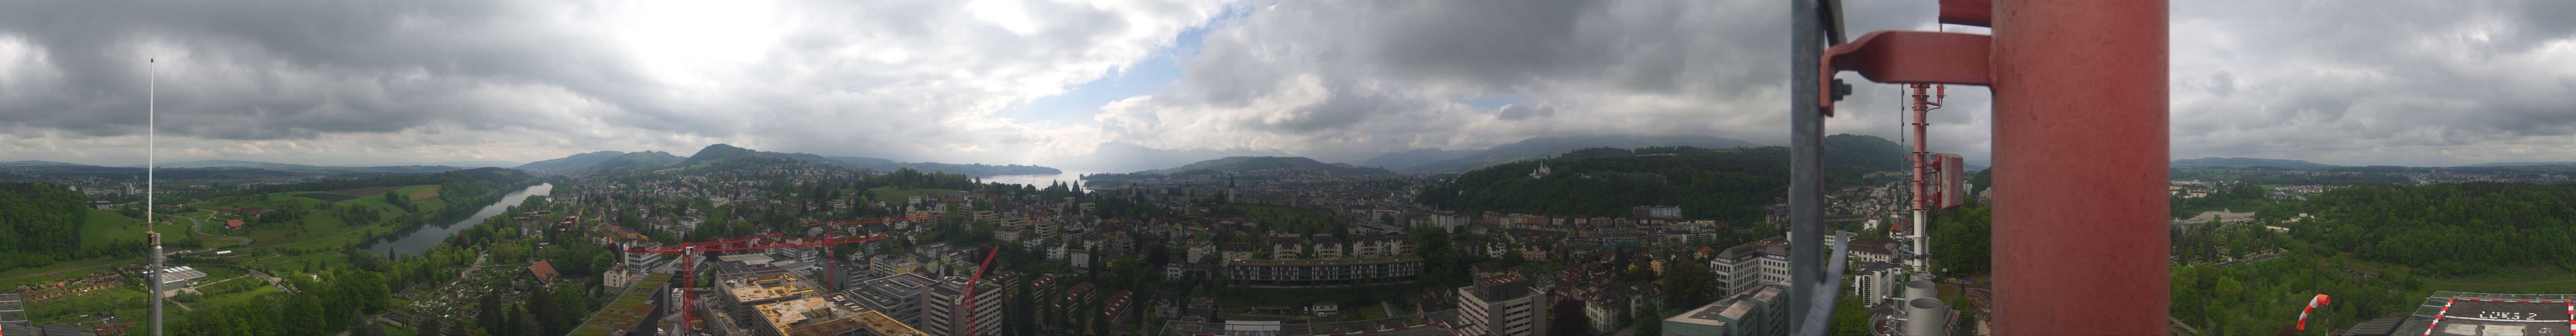 Luzern: Luzerner Kantonsspital